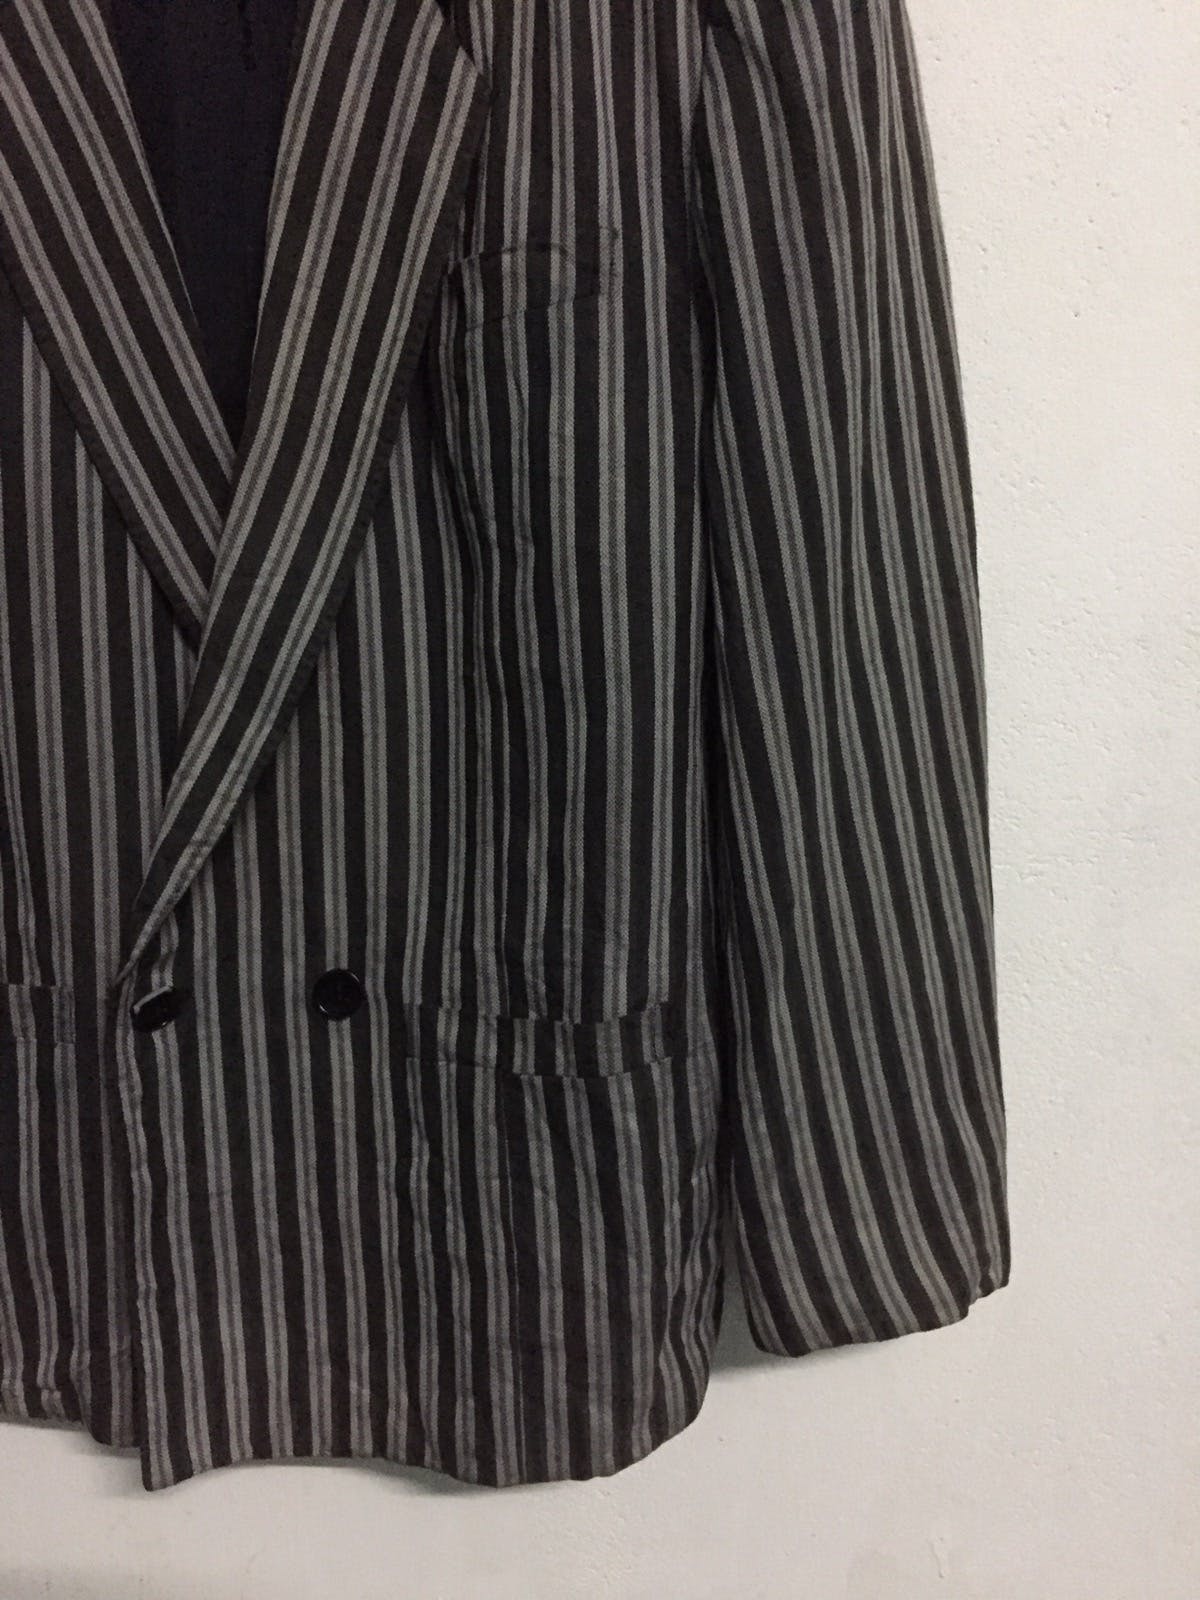 Kenzo Zebra Stripes Jacket Coat Made in Japan - 5